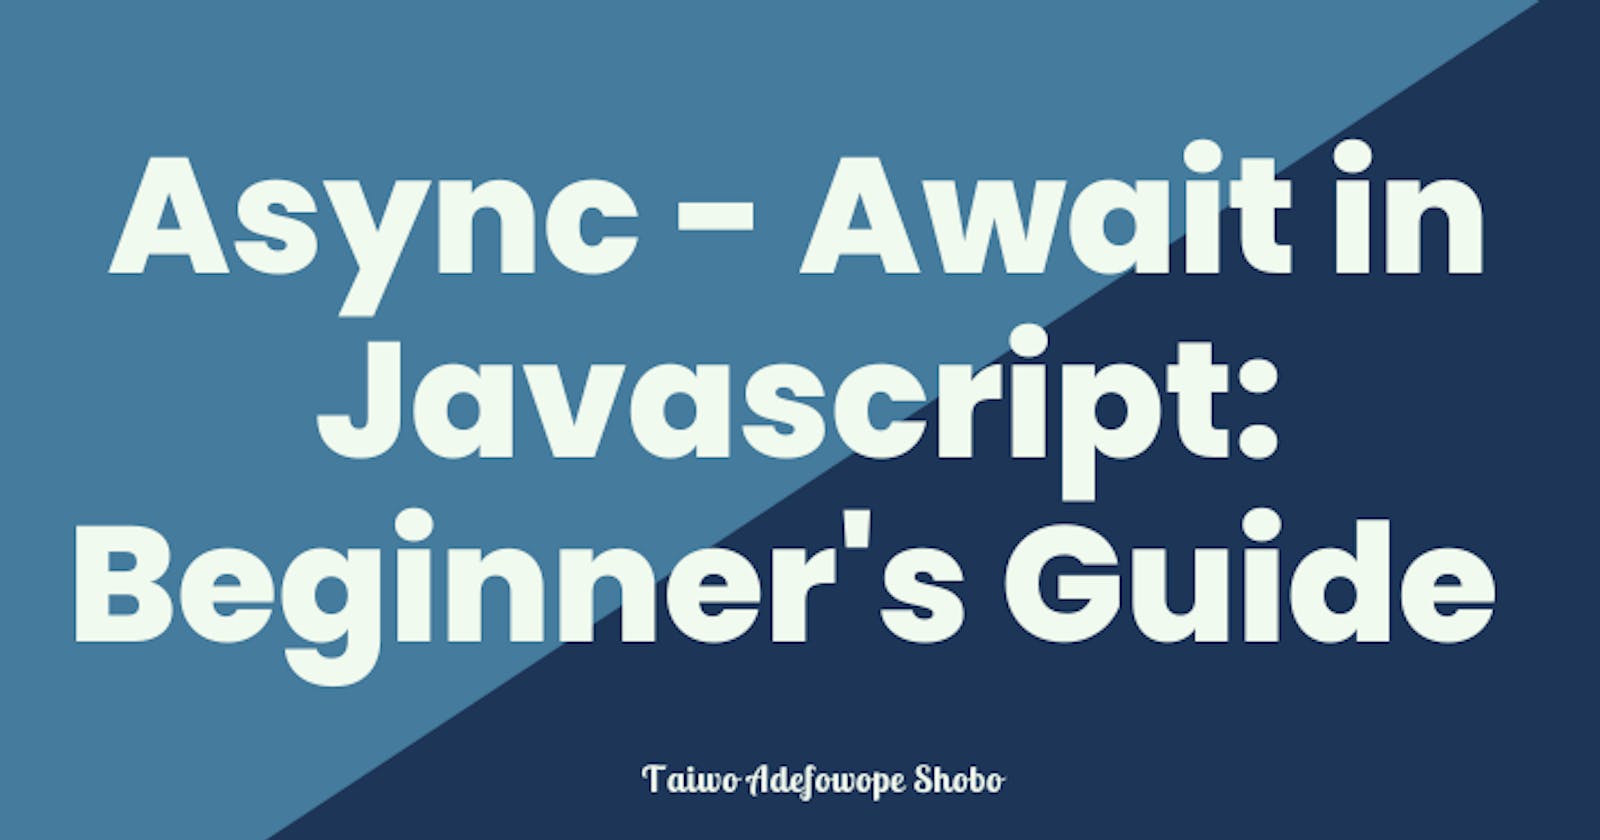 Async - Await in Javascript: Beginner's Guide